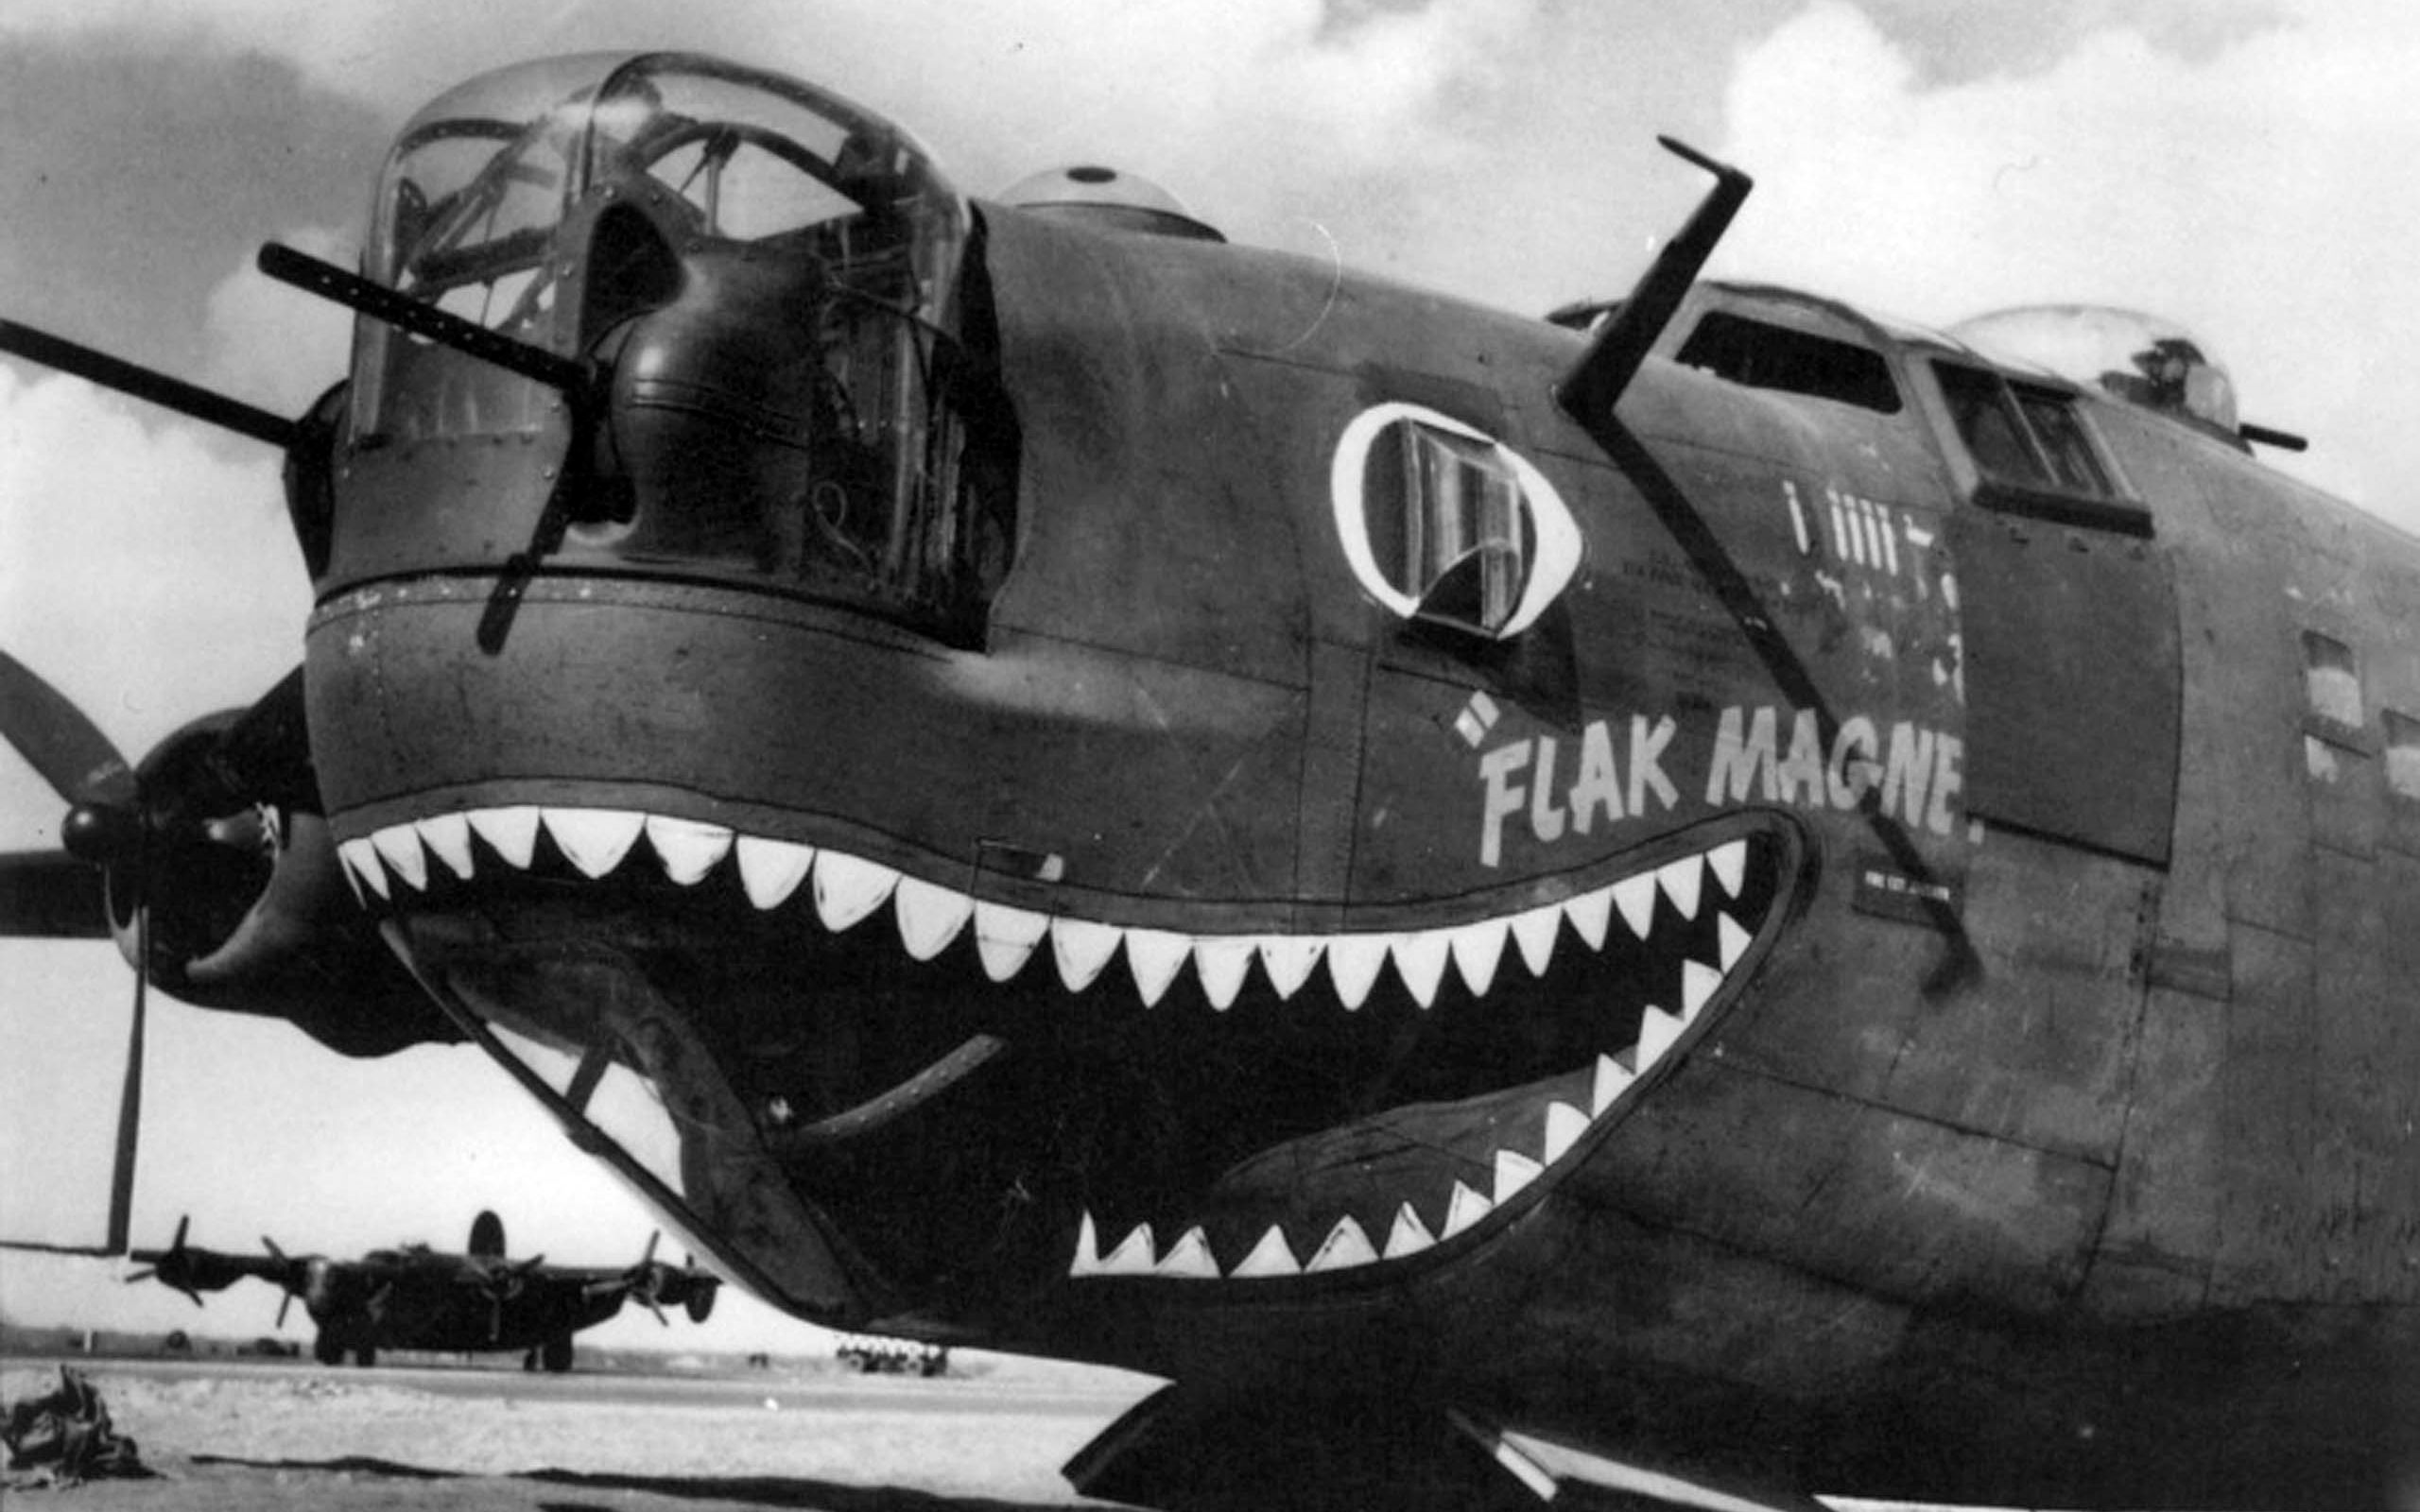 佩4轰炸机图片